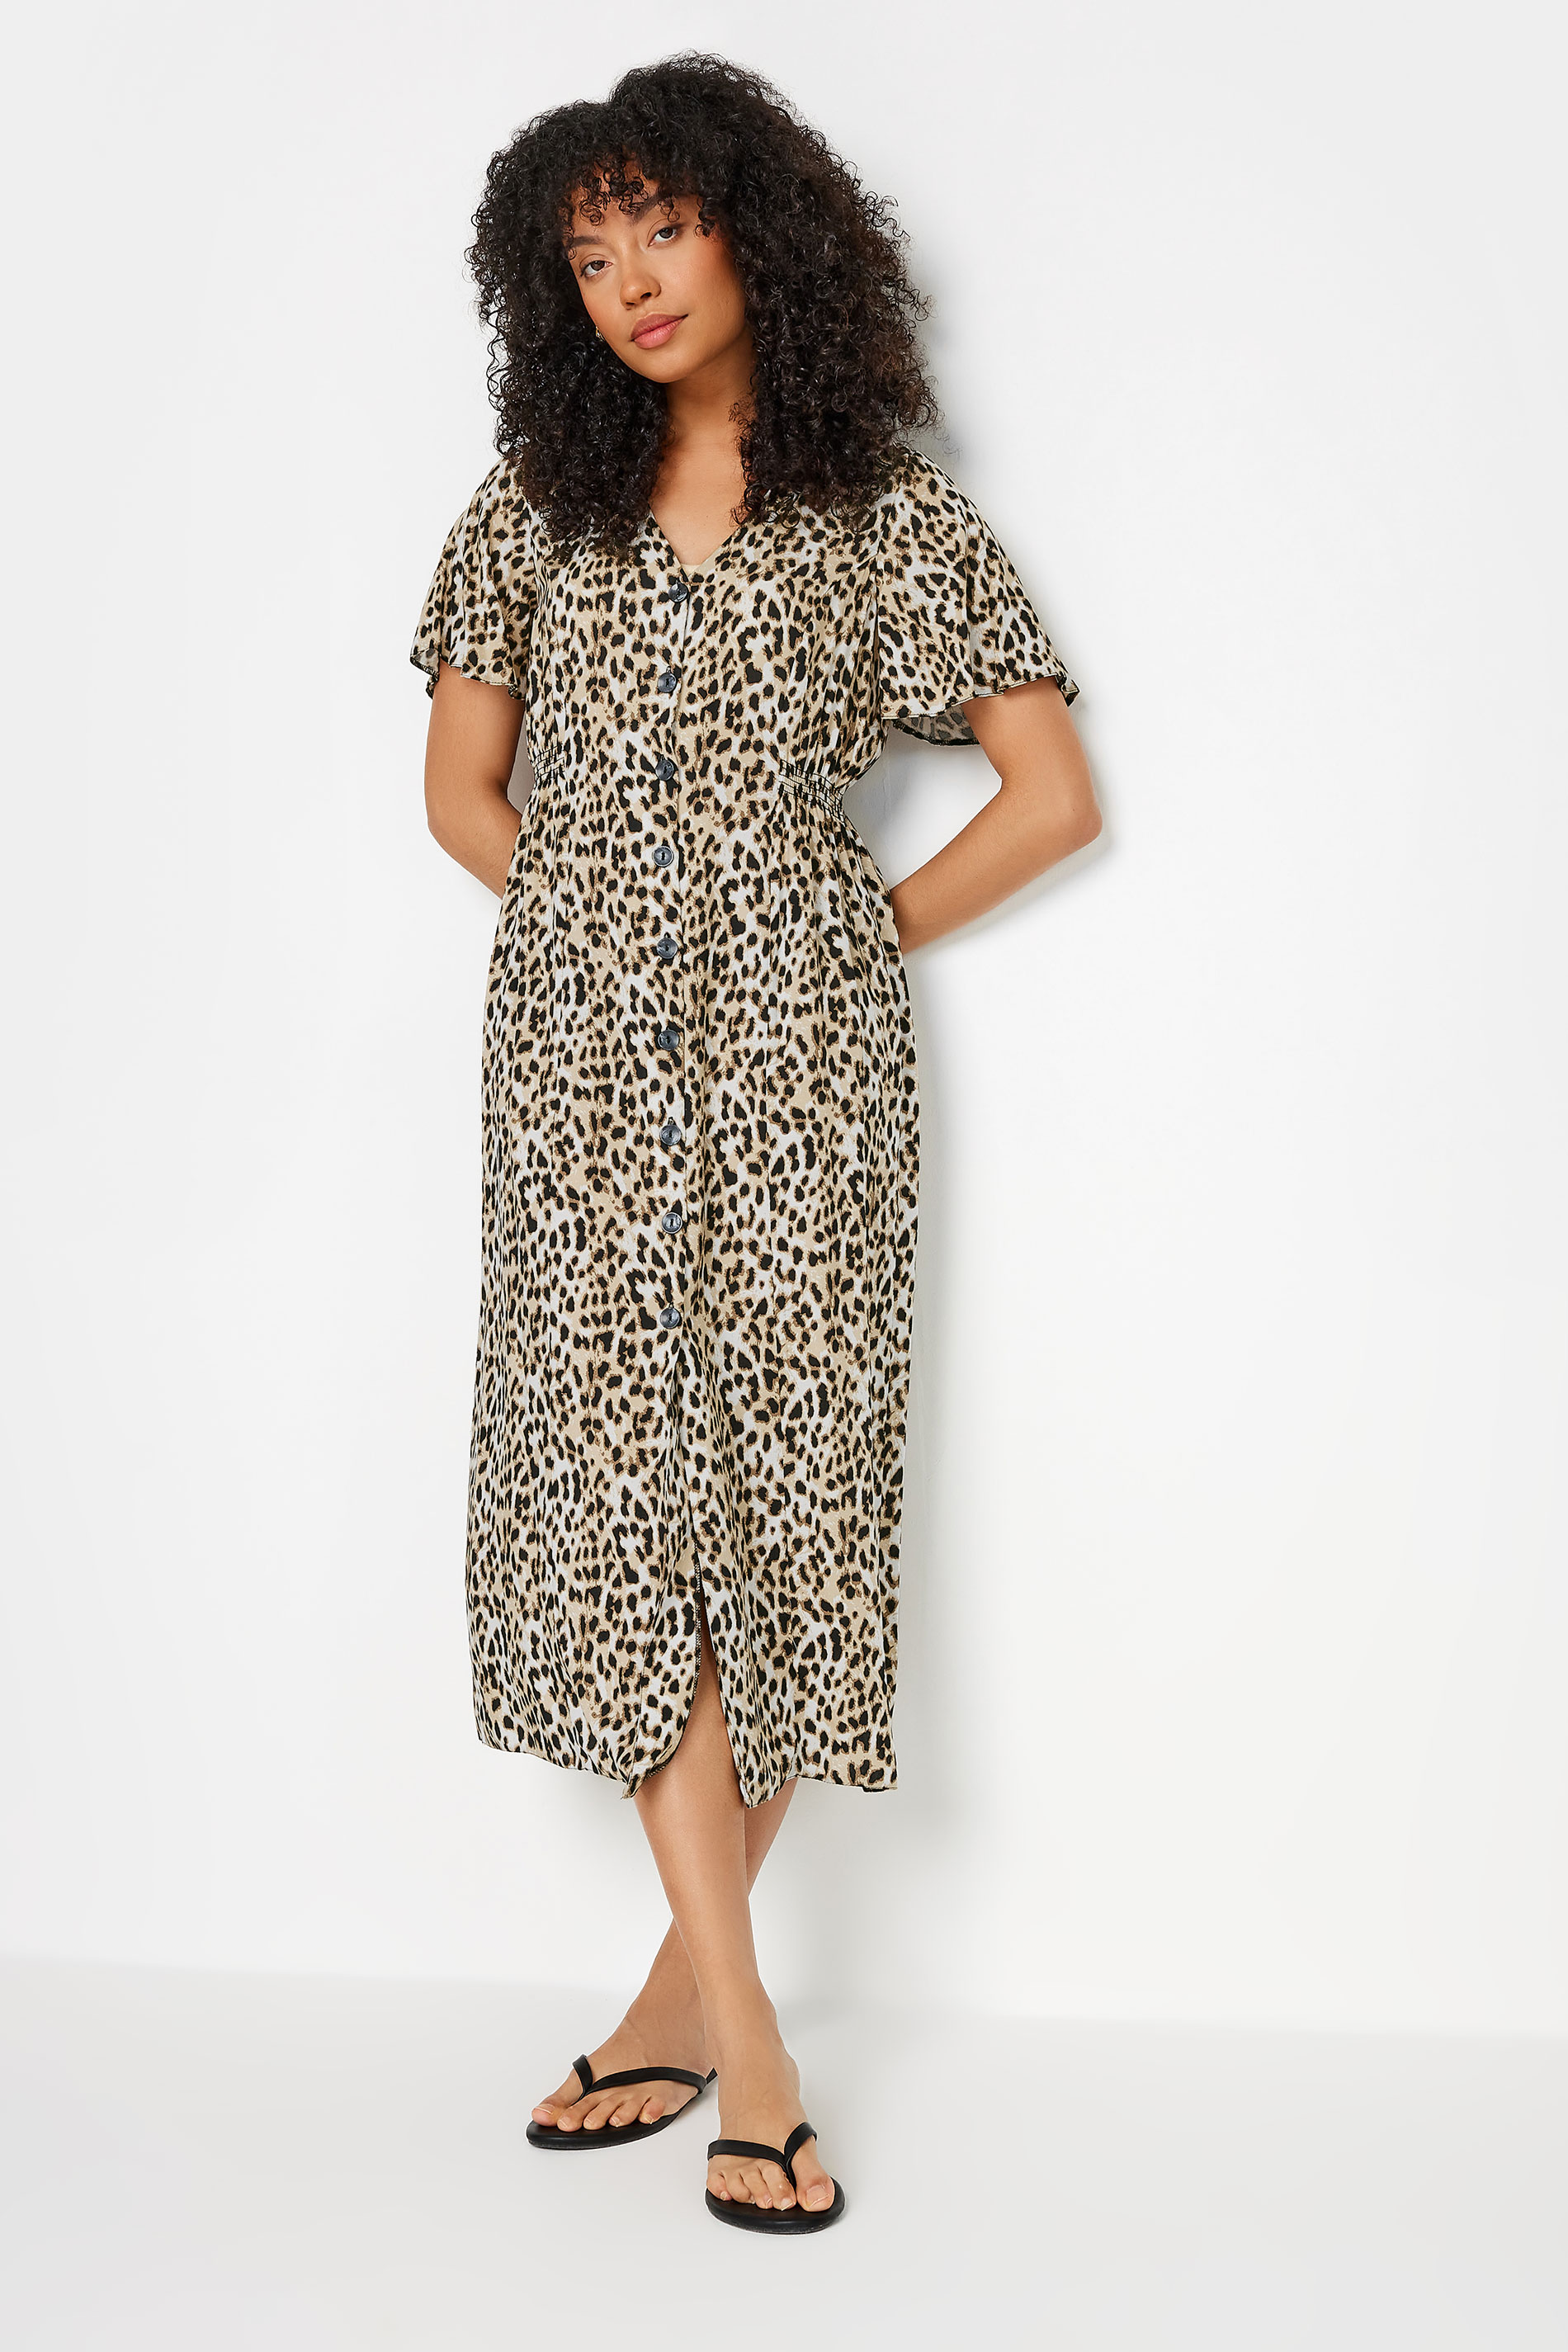 M&Co Natural Brown Leopard Print Button Through Midi Tea Dress | M&Co 2